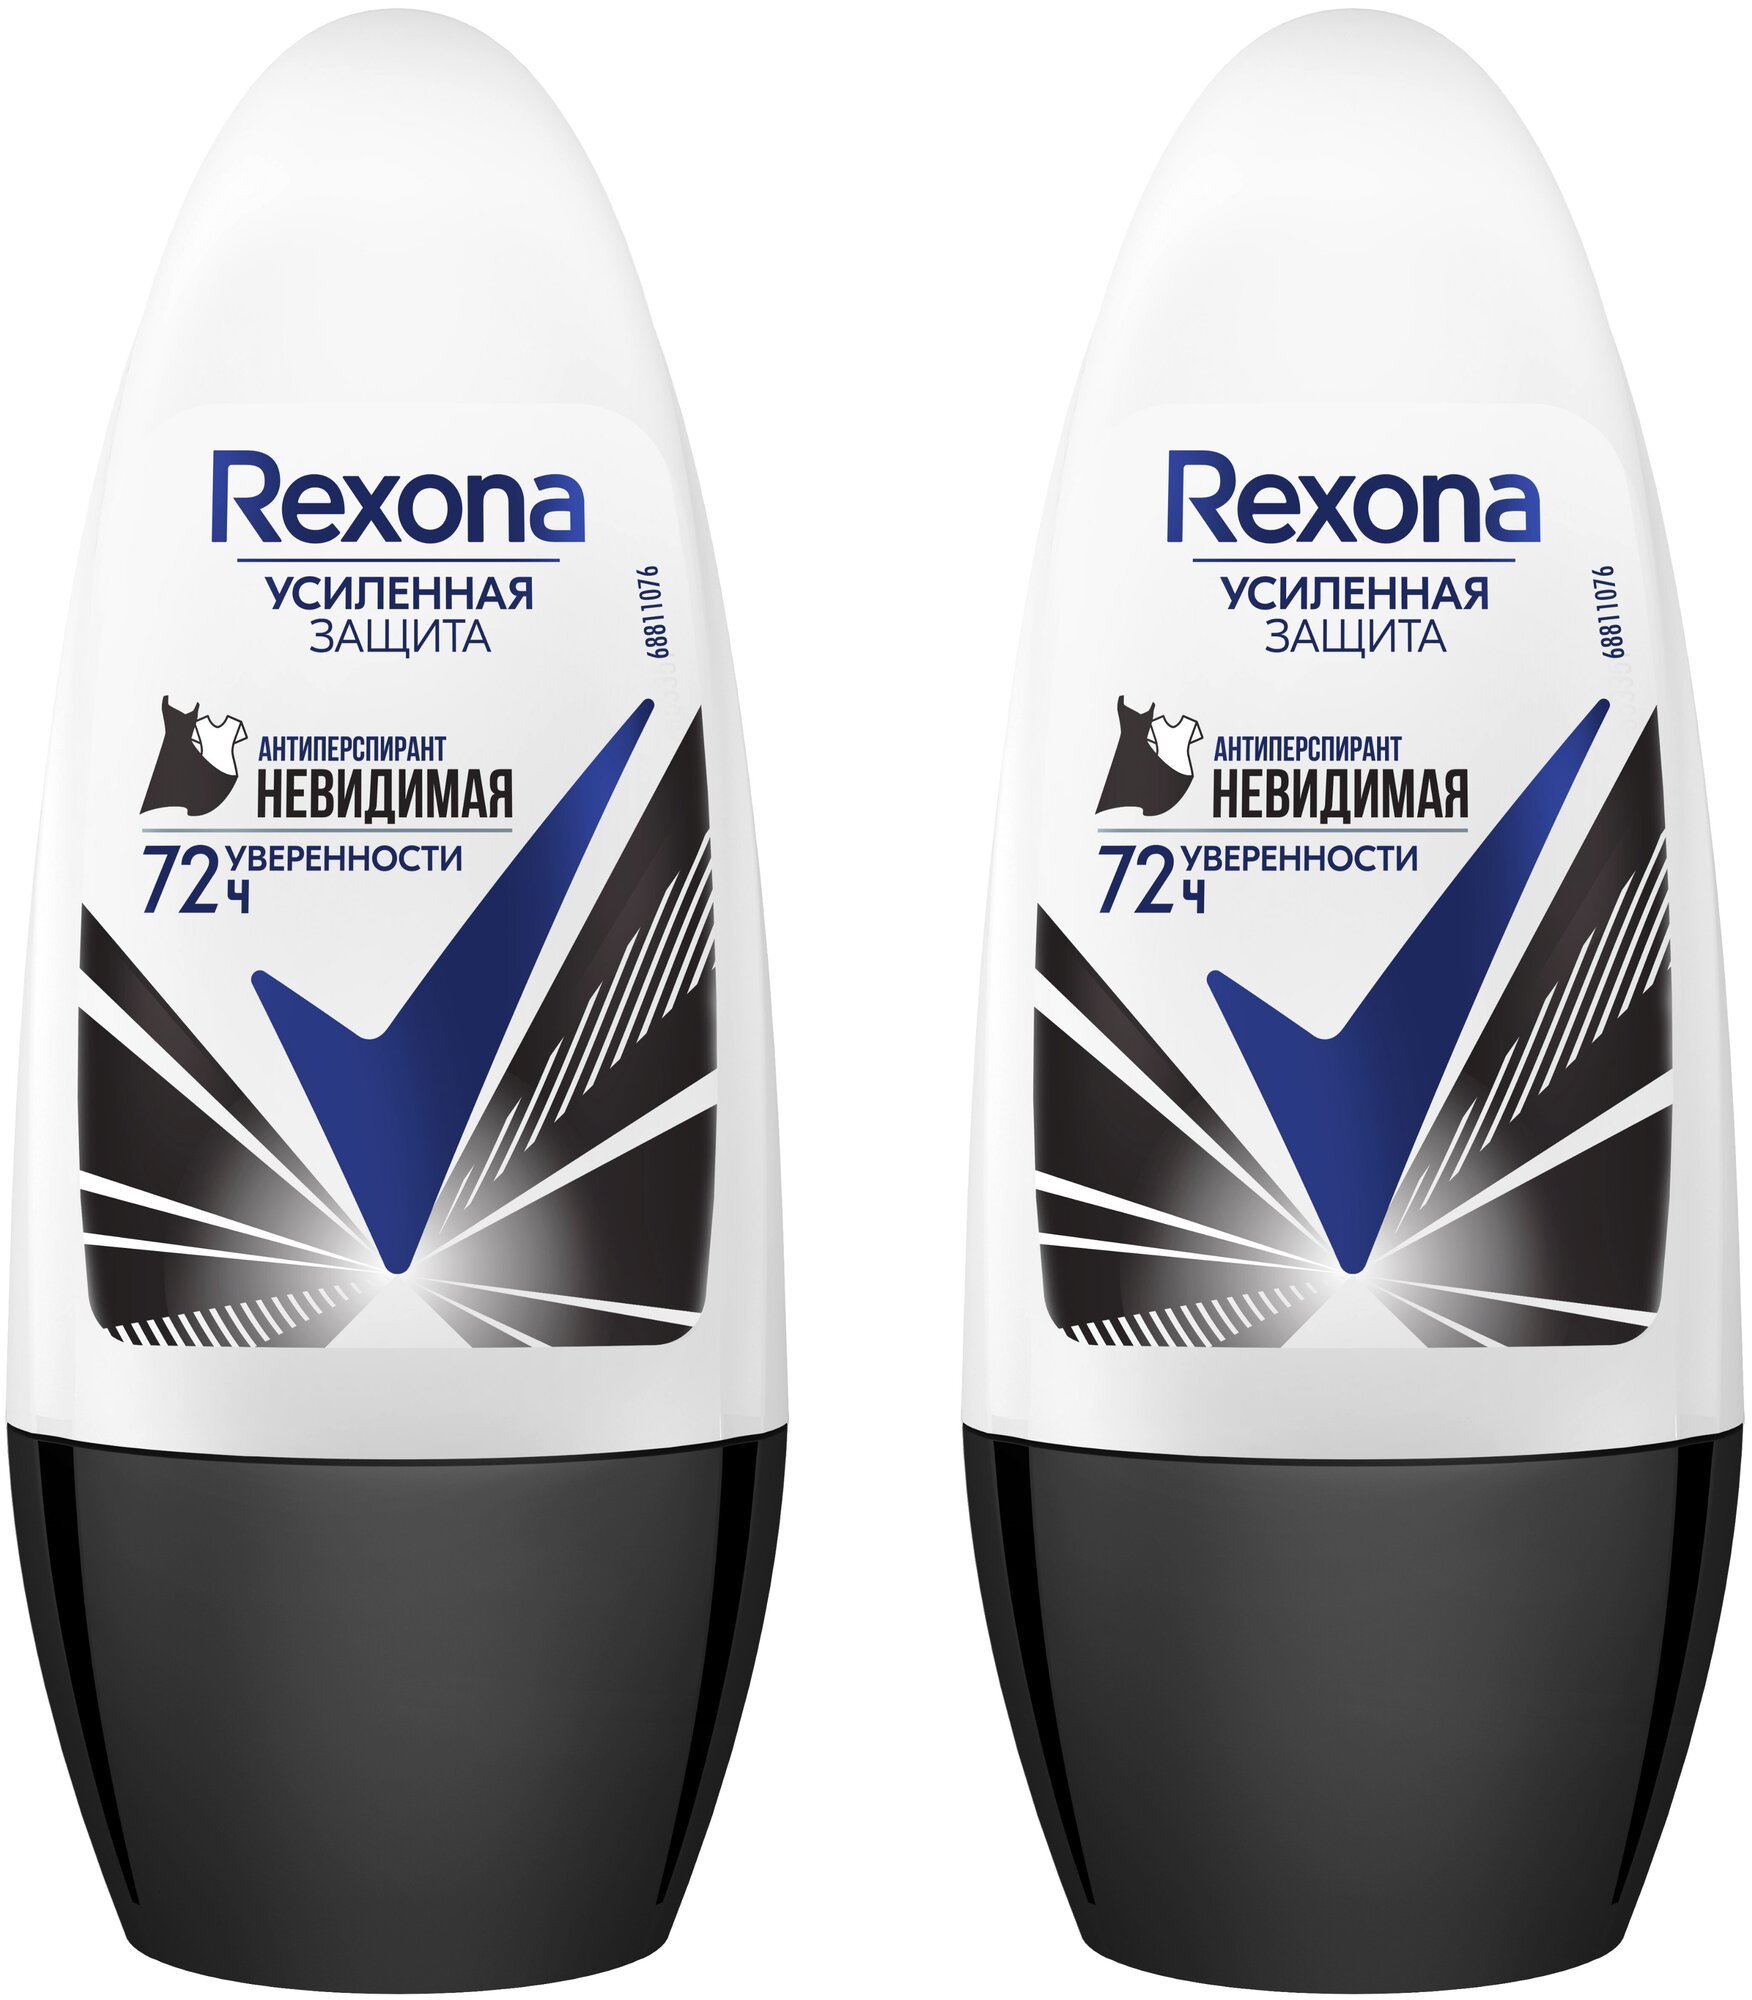 REXONA Део-шарик кристалл Невидимая защита на чёрном и белом 50мл (2 шт в наборе)